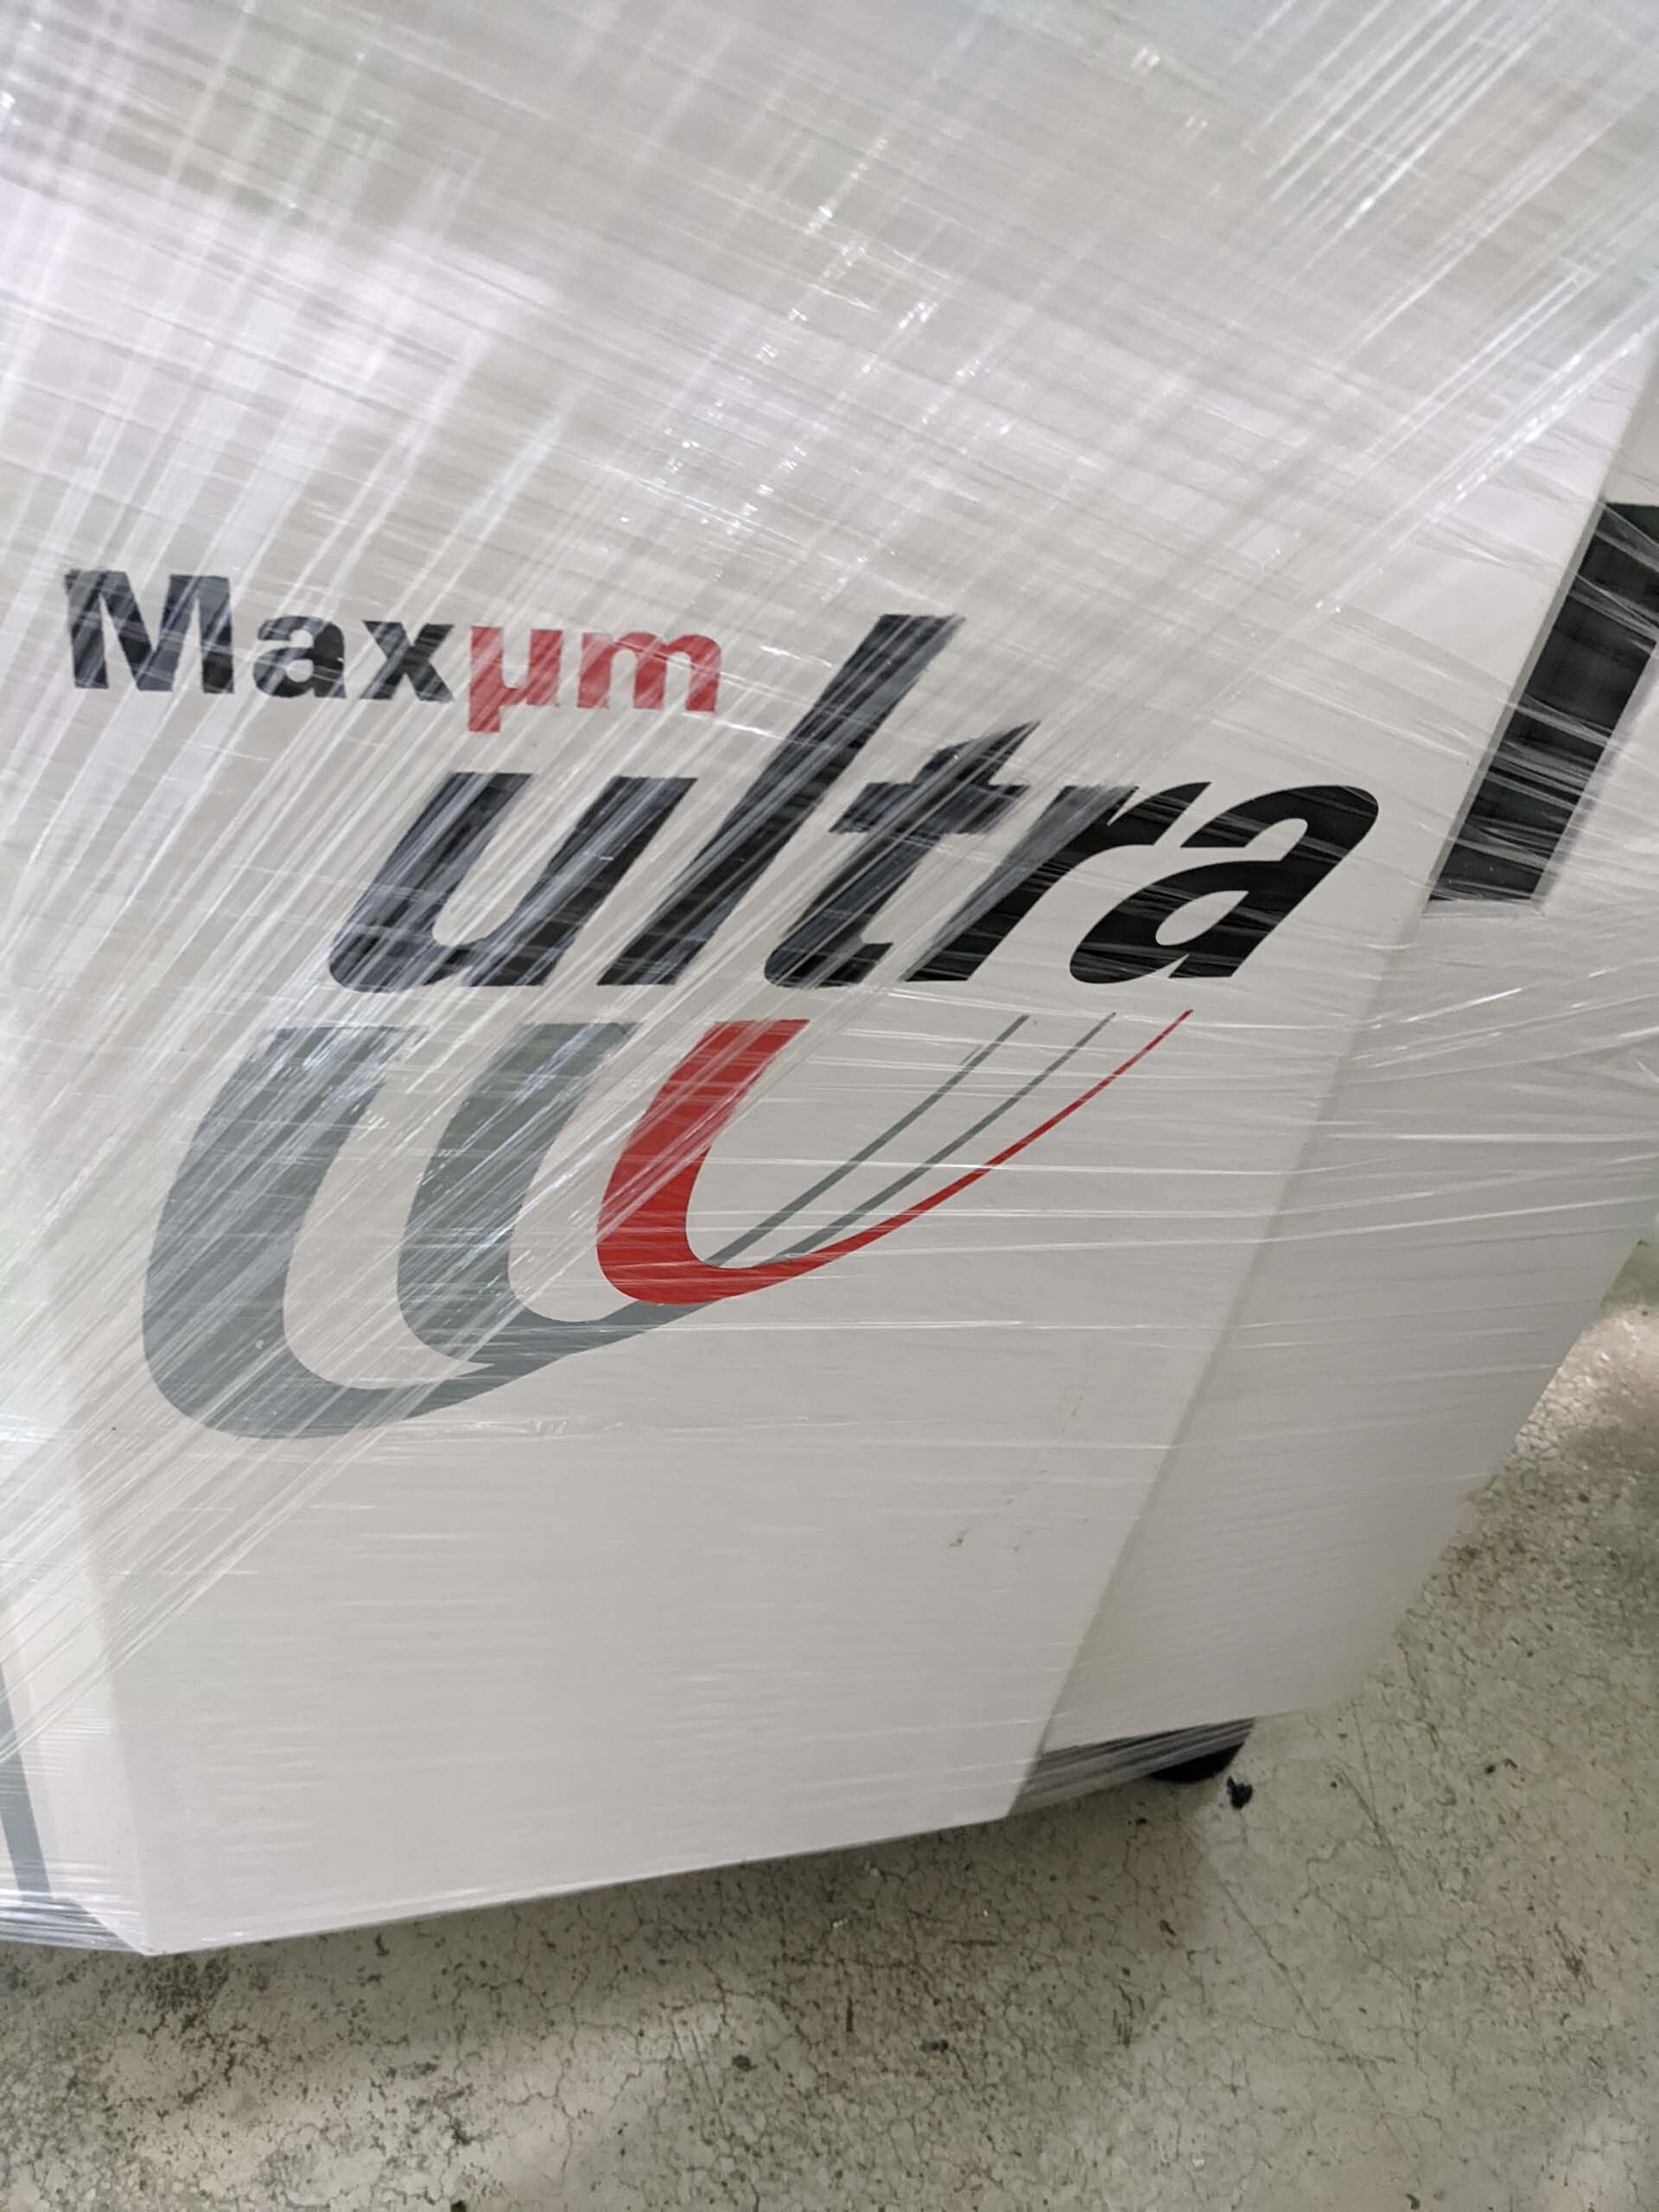 圖為 已使用的 K&S Maxum Ultra 待售